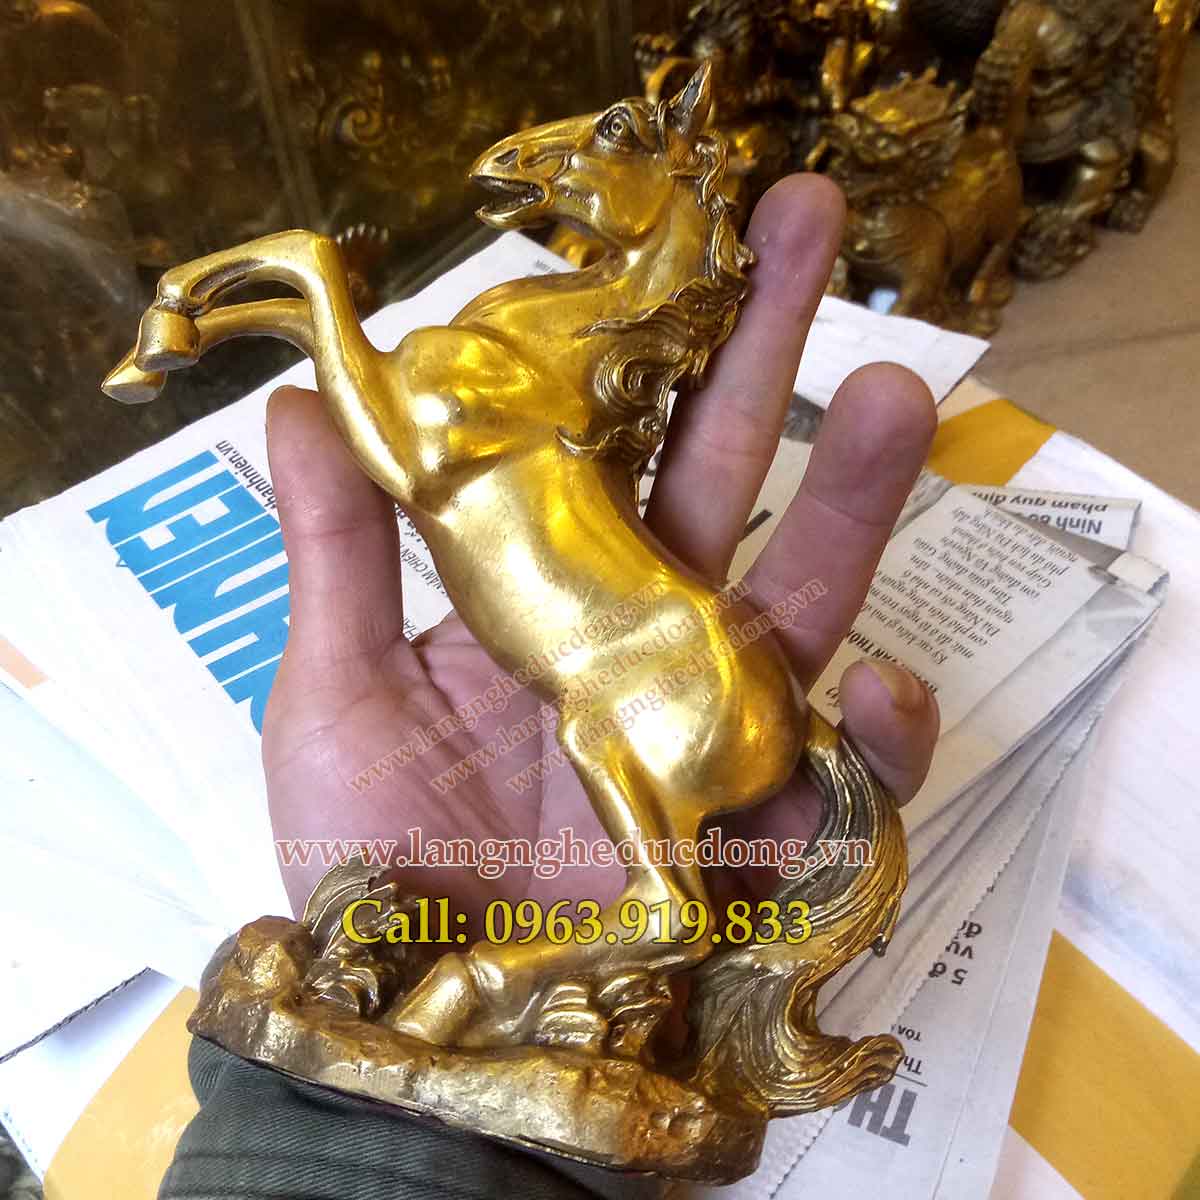 langngheducdong.vn - tượng đồng, tượng ngựa bằng đồng, mẫu tượng ngựa đồng